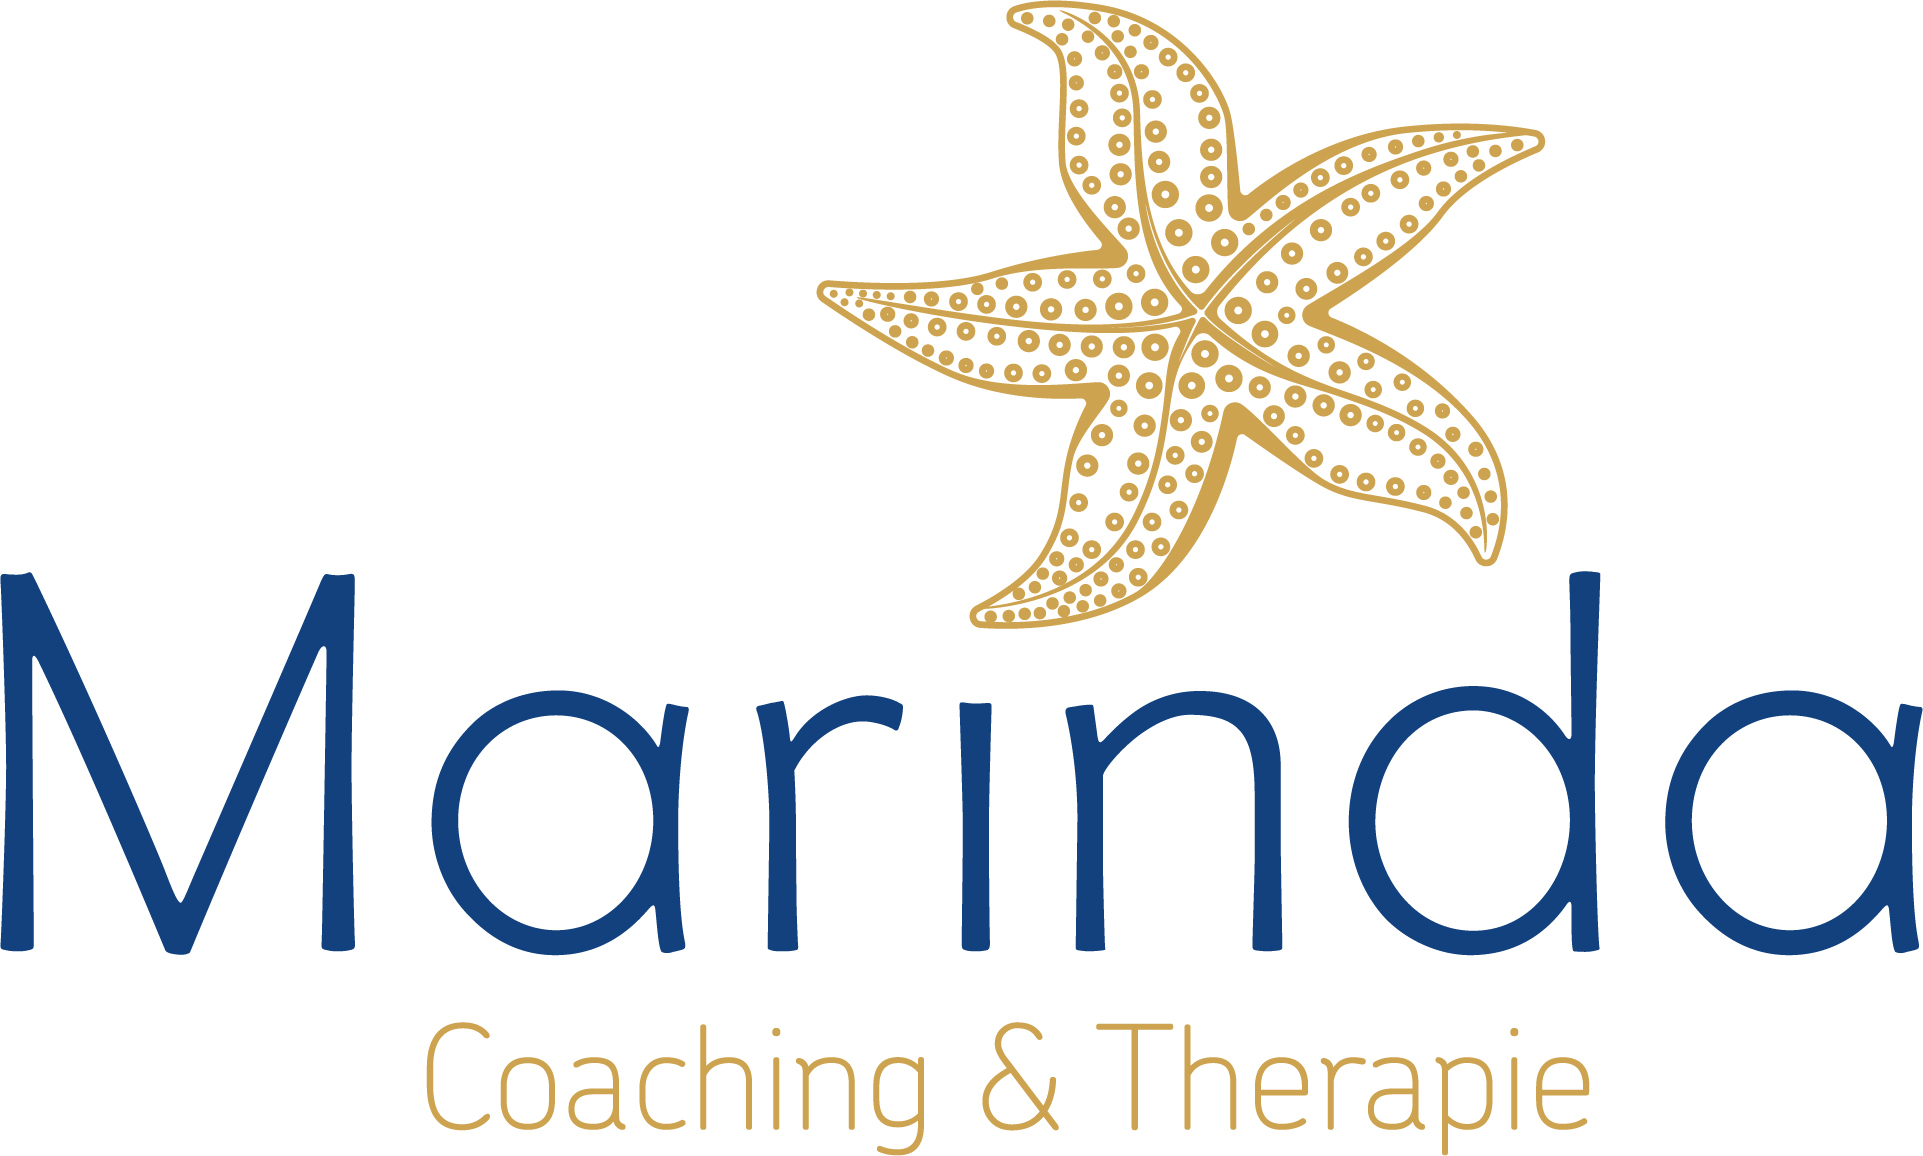 Marinda coaching & therapie